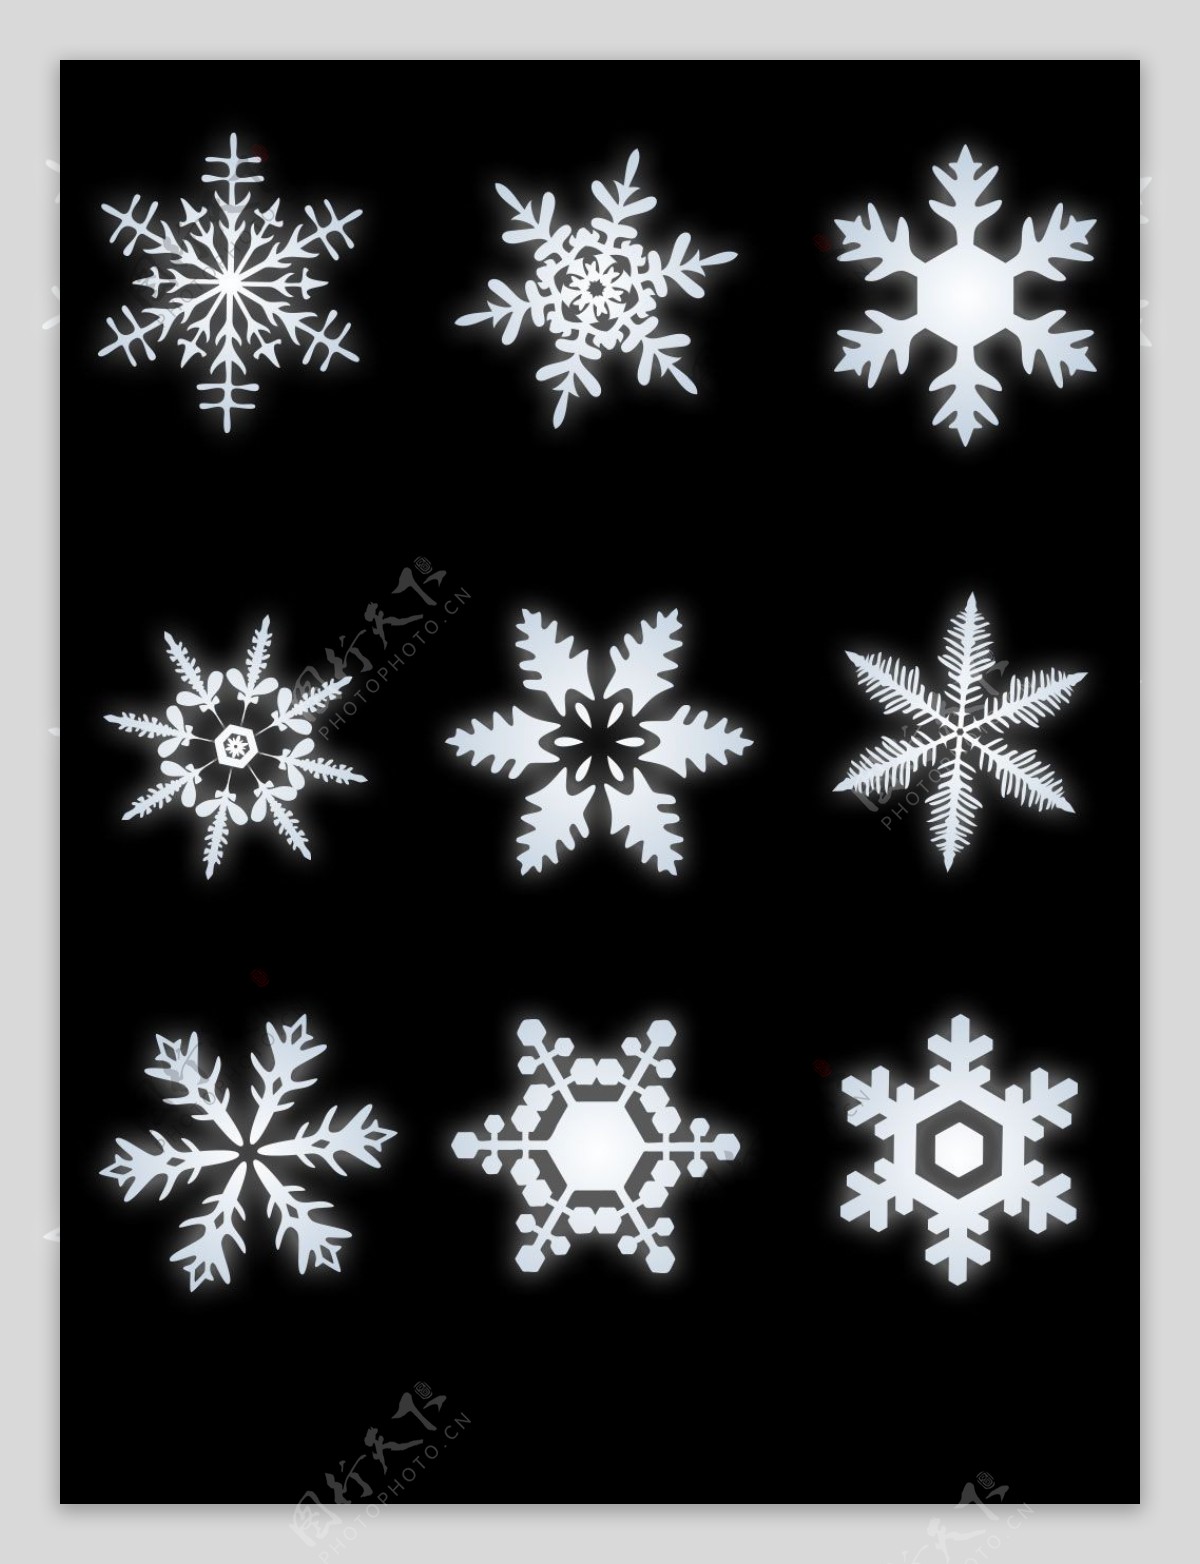 白色雪花矢量设计素材冬日装饰图案集合